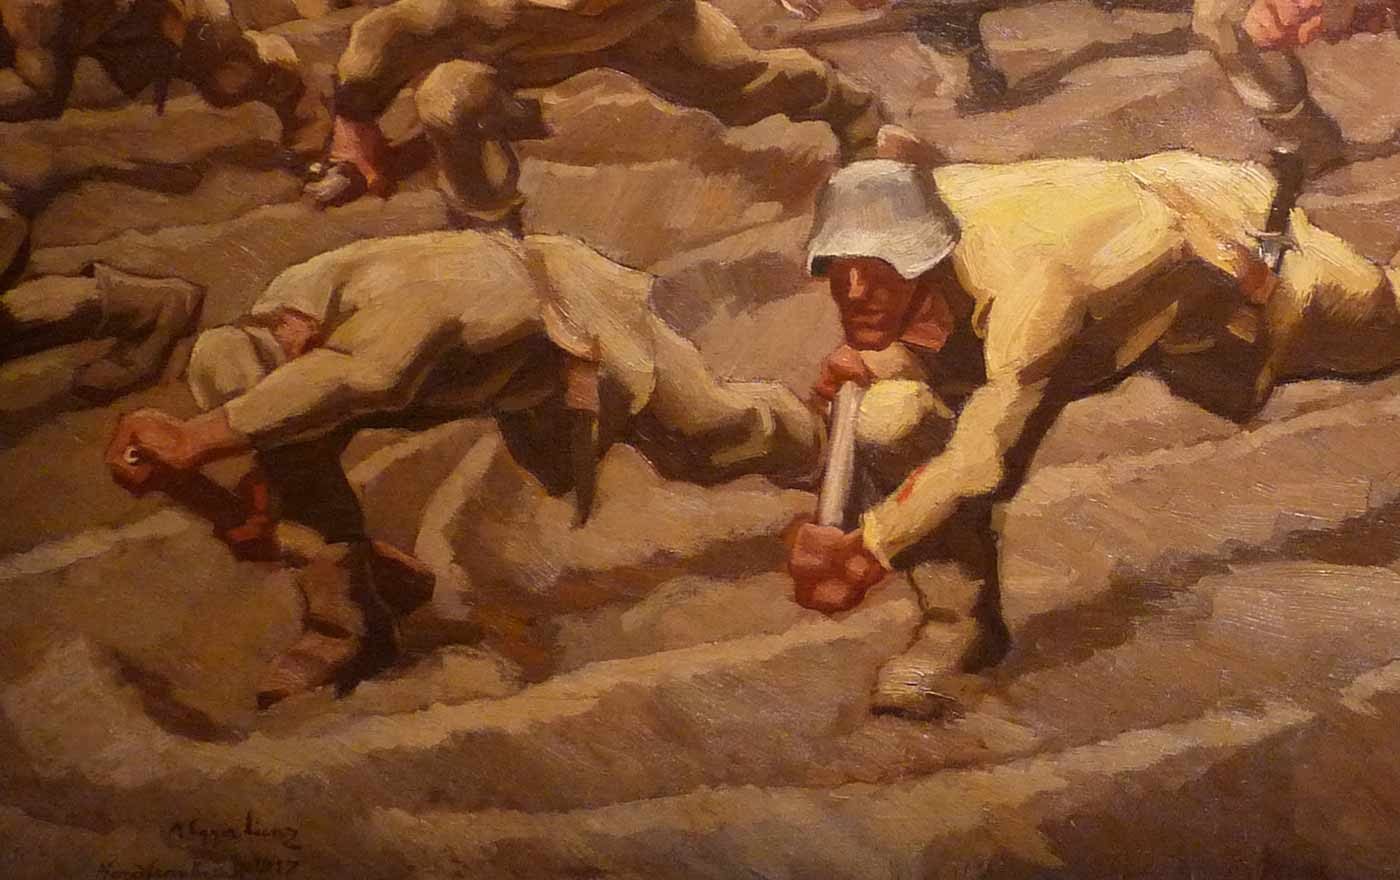 Künstlerisches Zeugnis des Ersten Weltkriegs: Albin Egger-Lienz' Gemälde "Nordfrankreich, 1917" (Detail). Foto: wikimedia/Ji-Elle